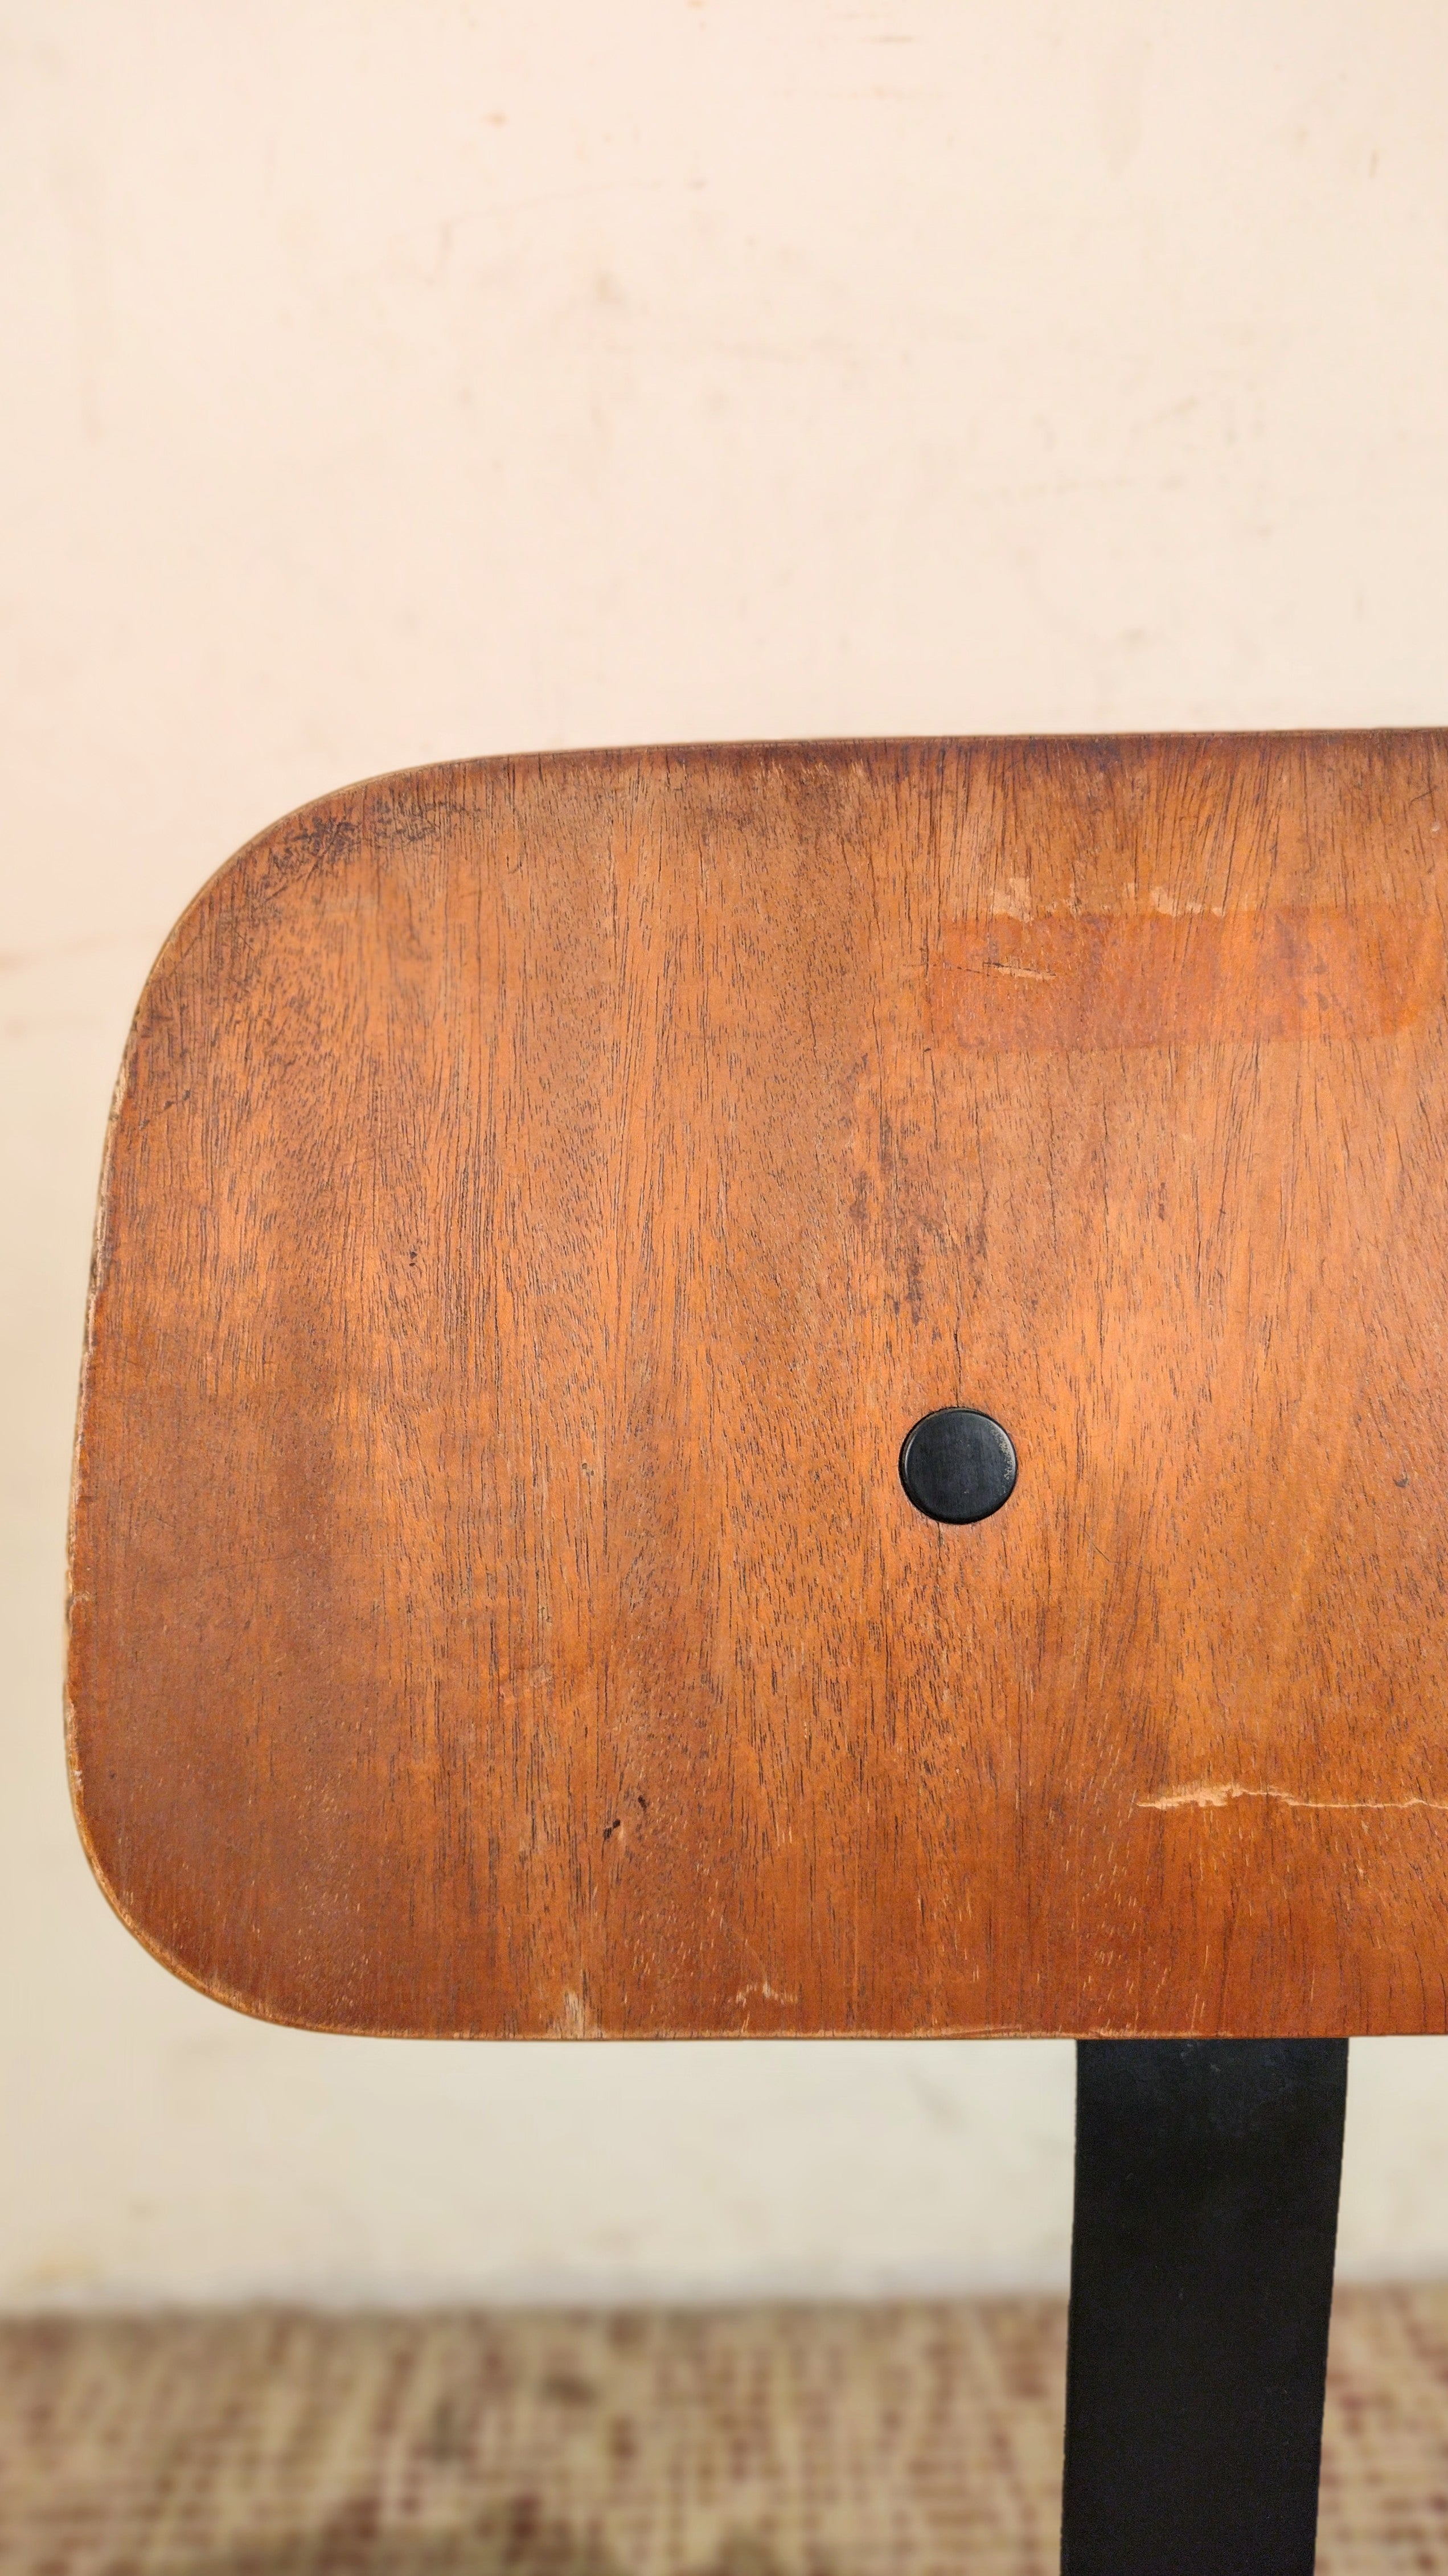 Cadeira GIROFLEX giratória com espaldar regulável em madeira e ferro